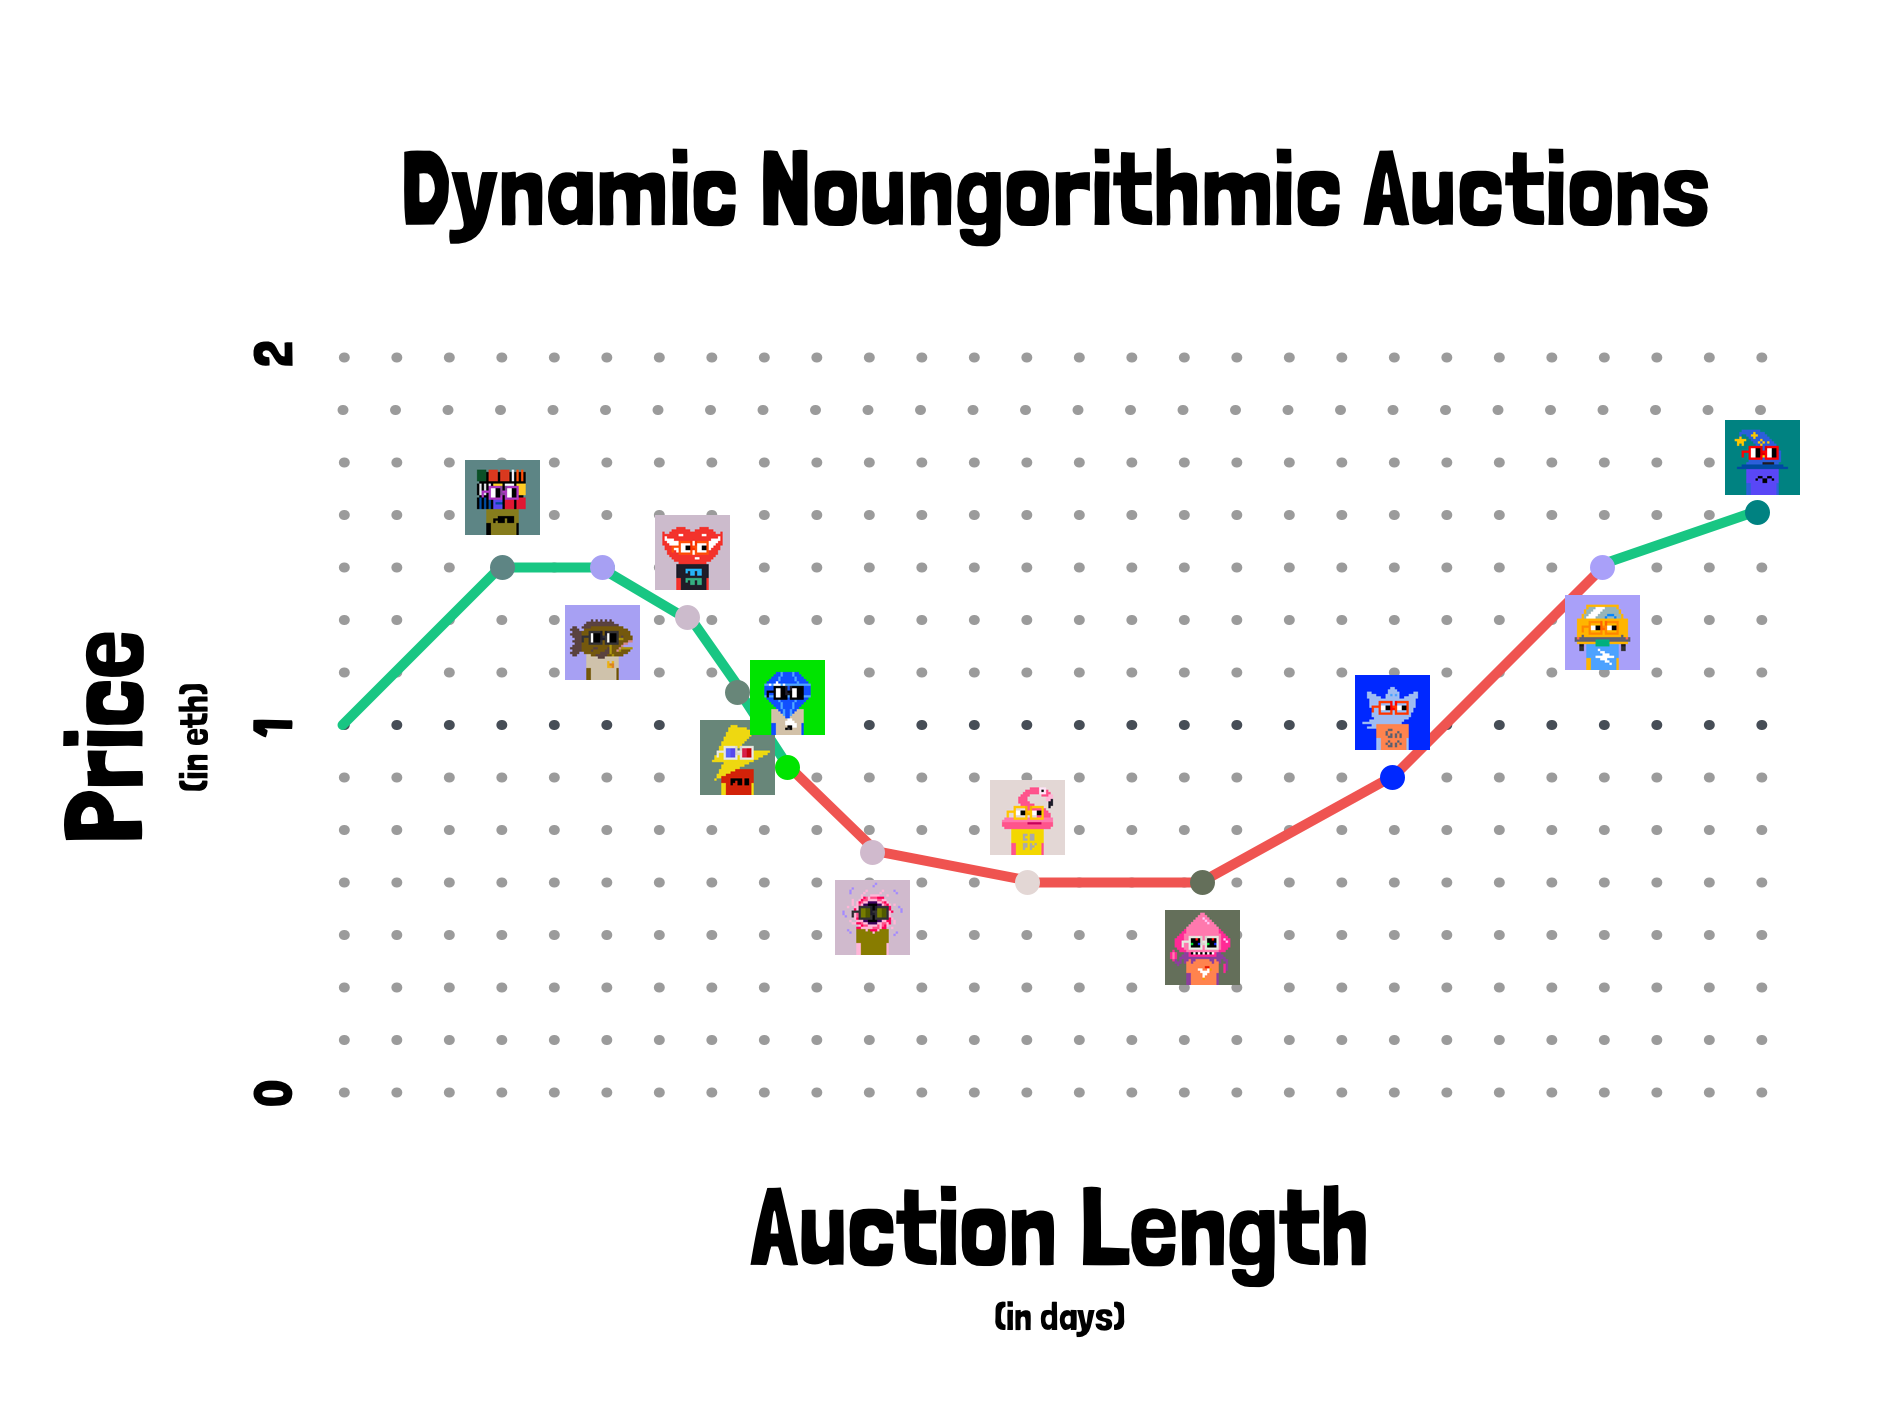 Dynamic Noungorithim Auctions